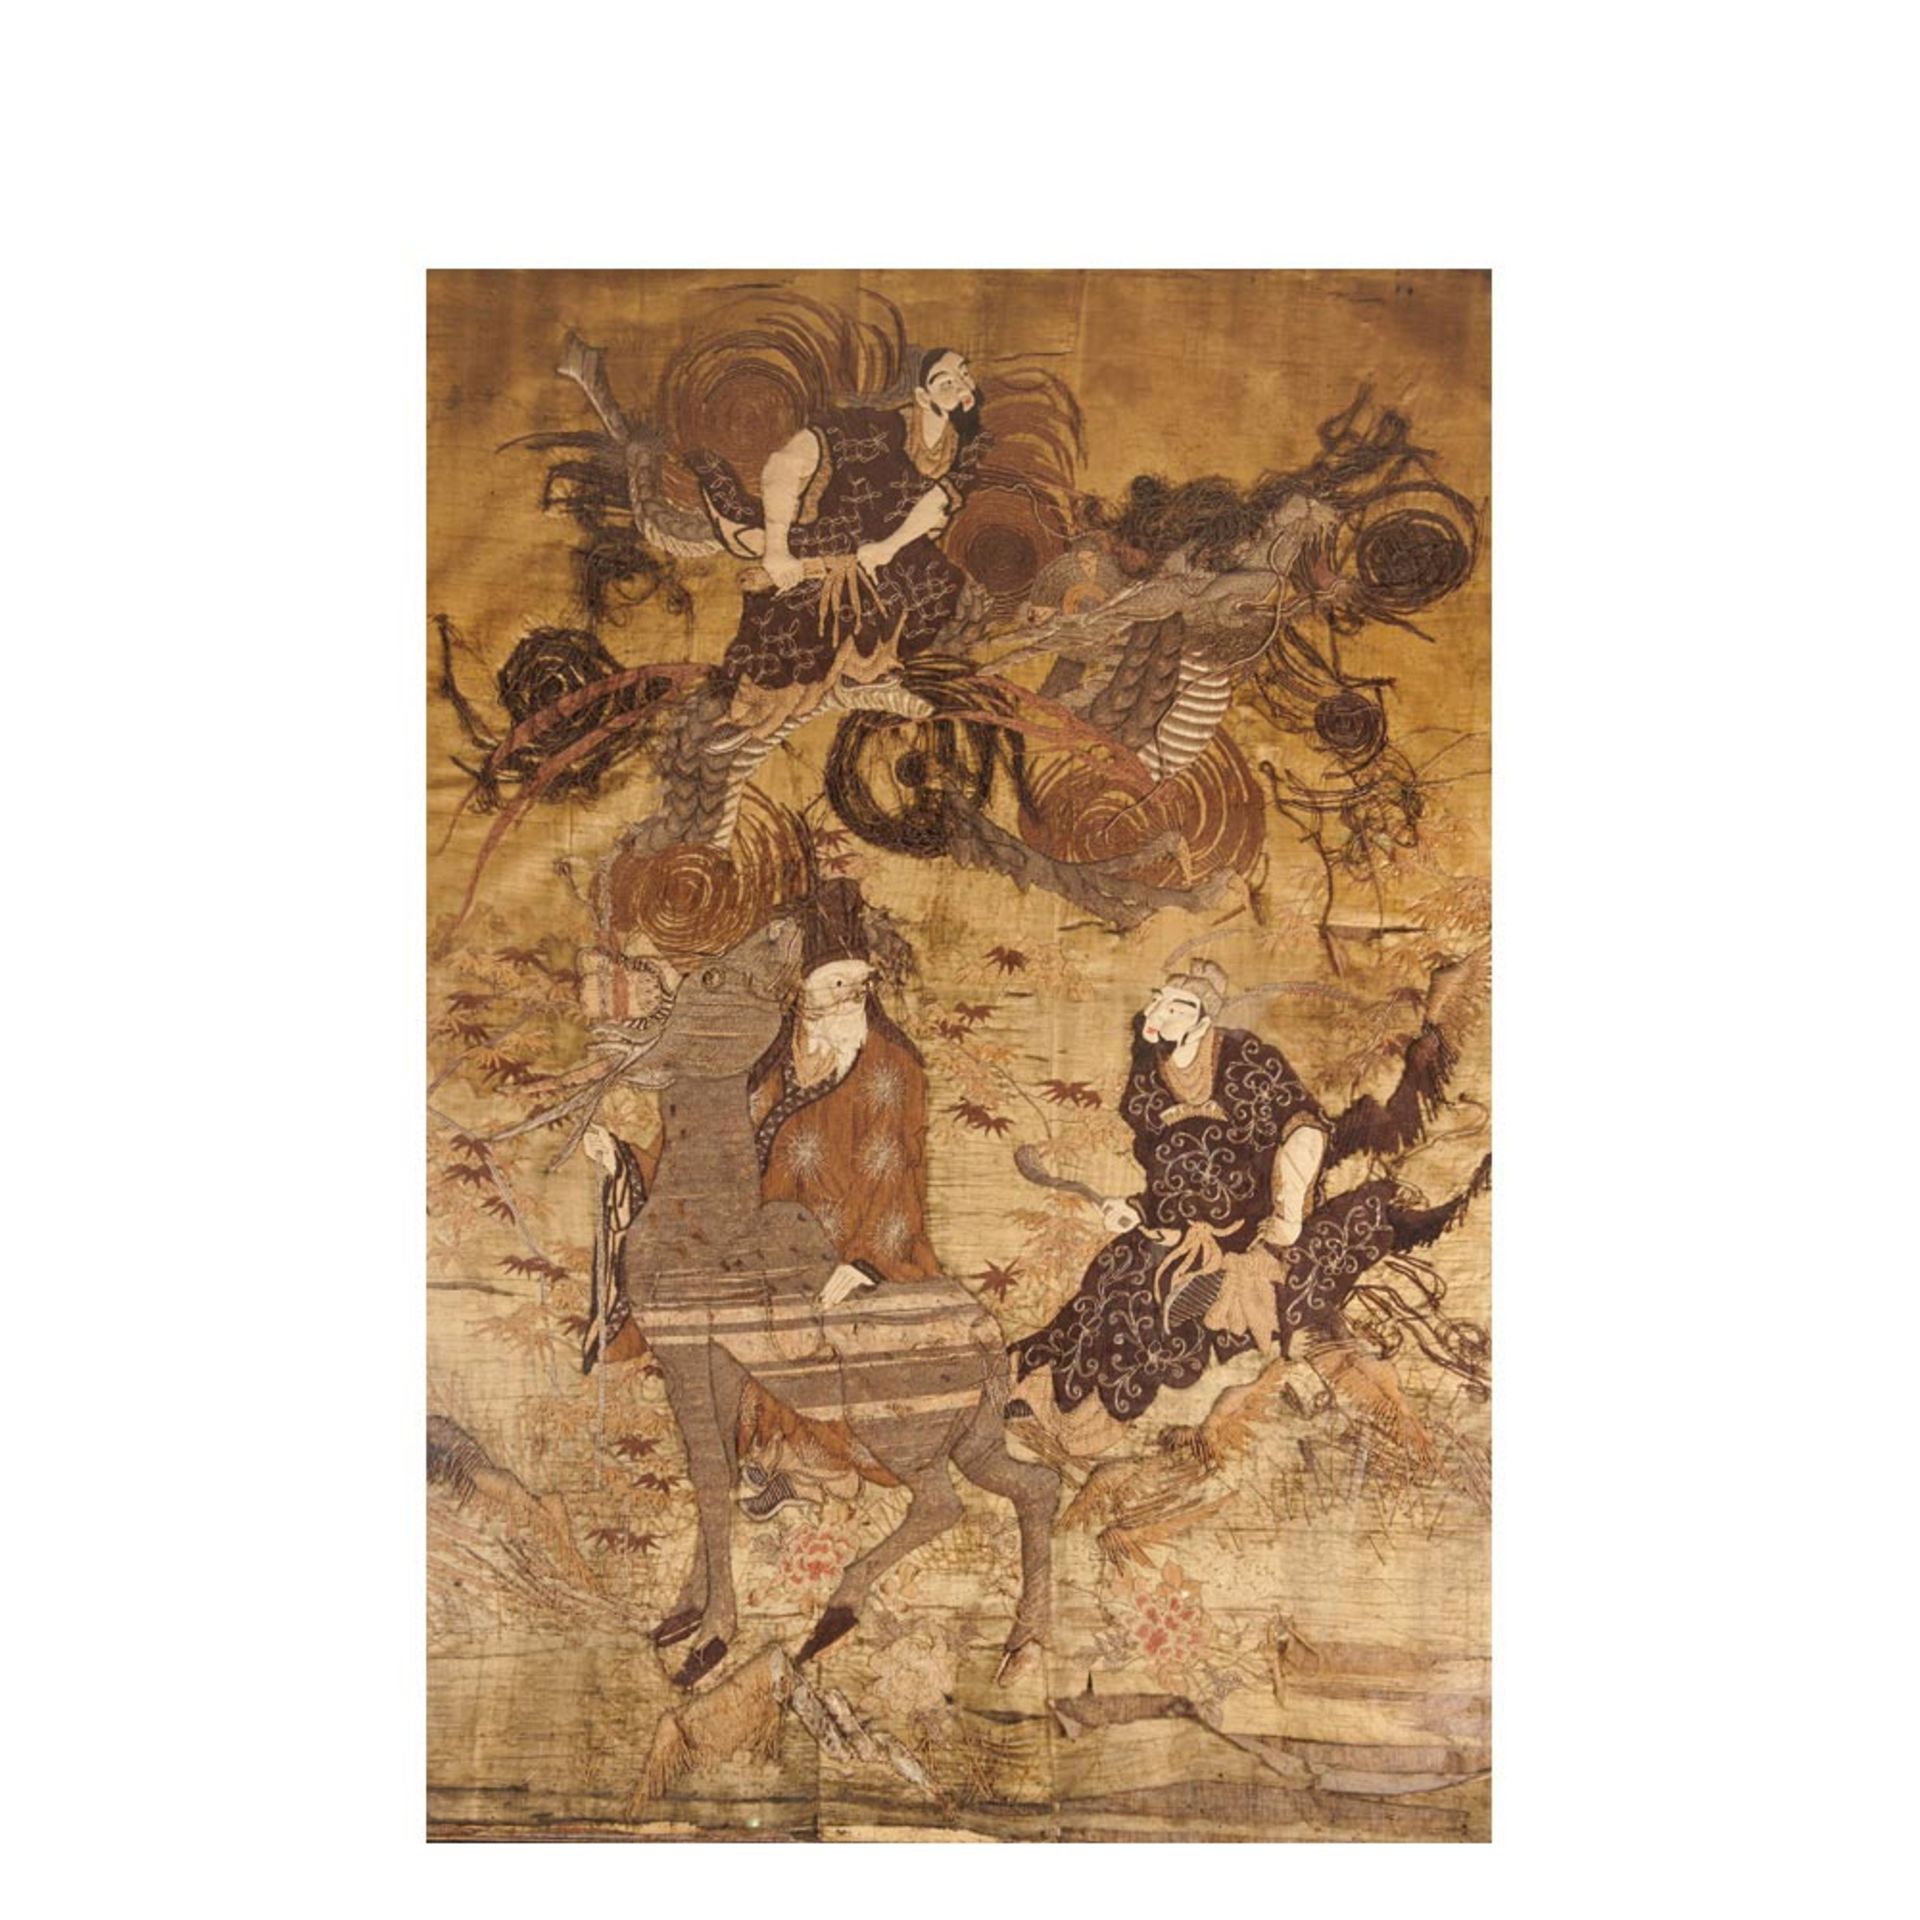 Tapiz japonés bordado con representación de Dioses, fles. del s.XVIII. Enmarcado. 132 x 185 cm.